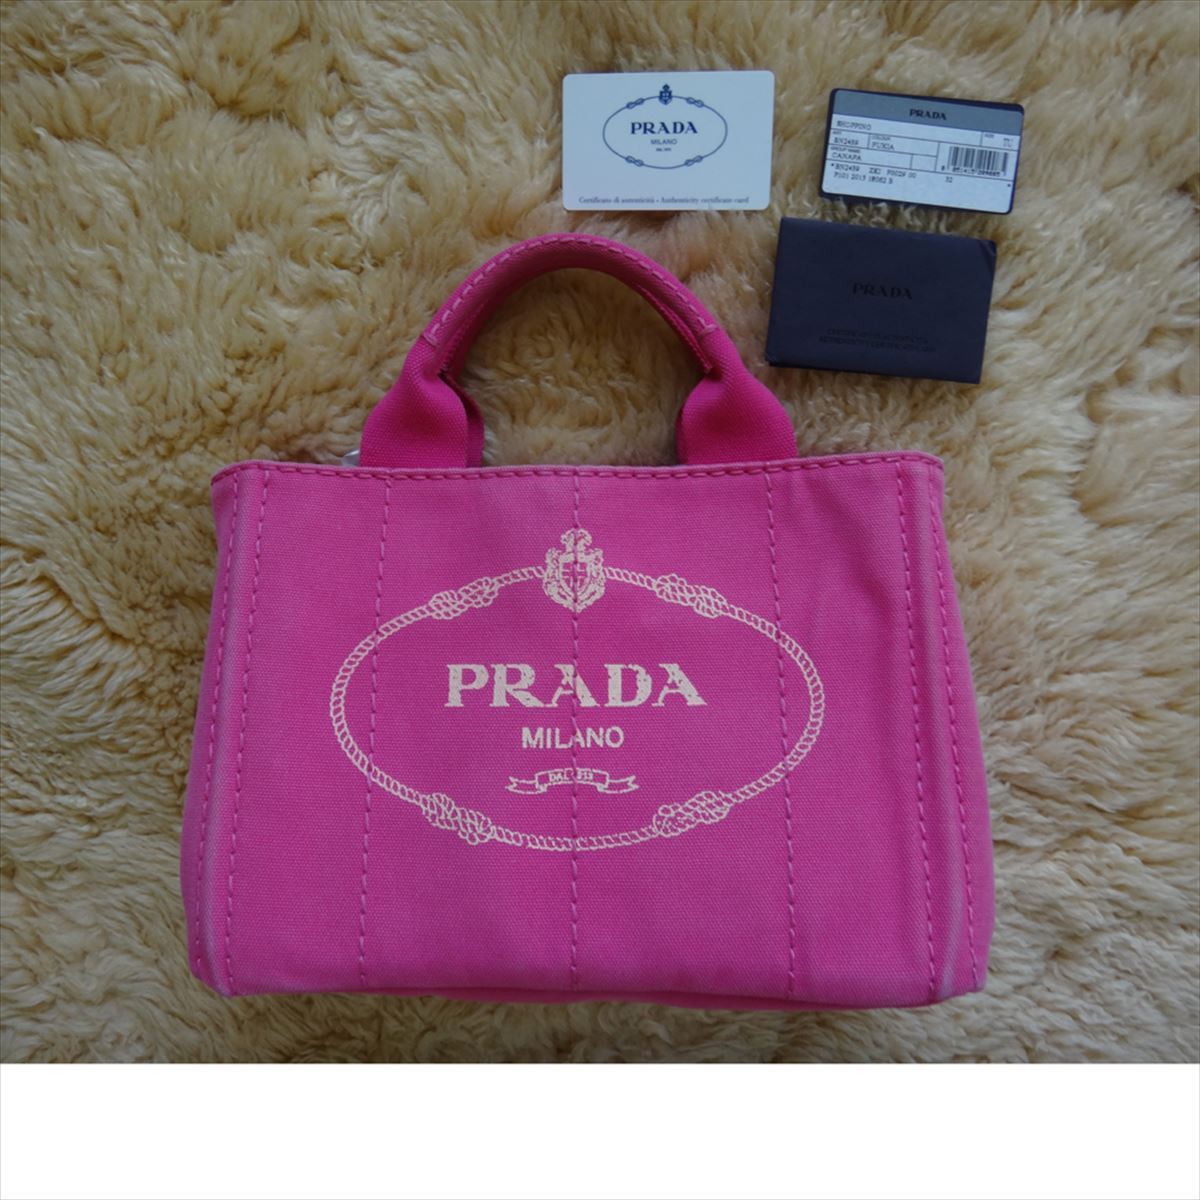 【特別セール品】 PRADA プラダ 【中古】 ピンク ハンド ストラップ付 B5サイズ書類 2WAY ショルダー トートバッグ カナパ トートバッグ